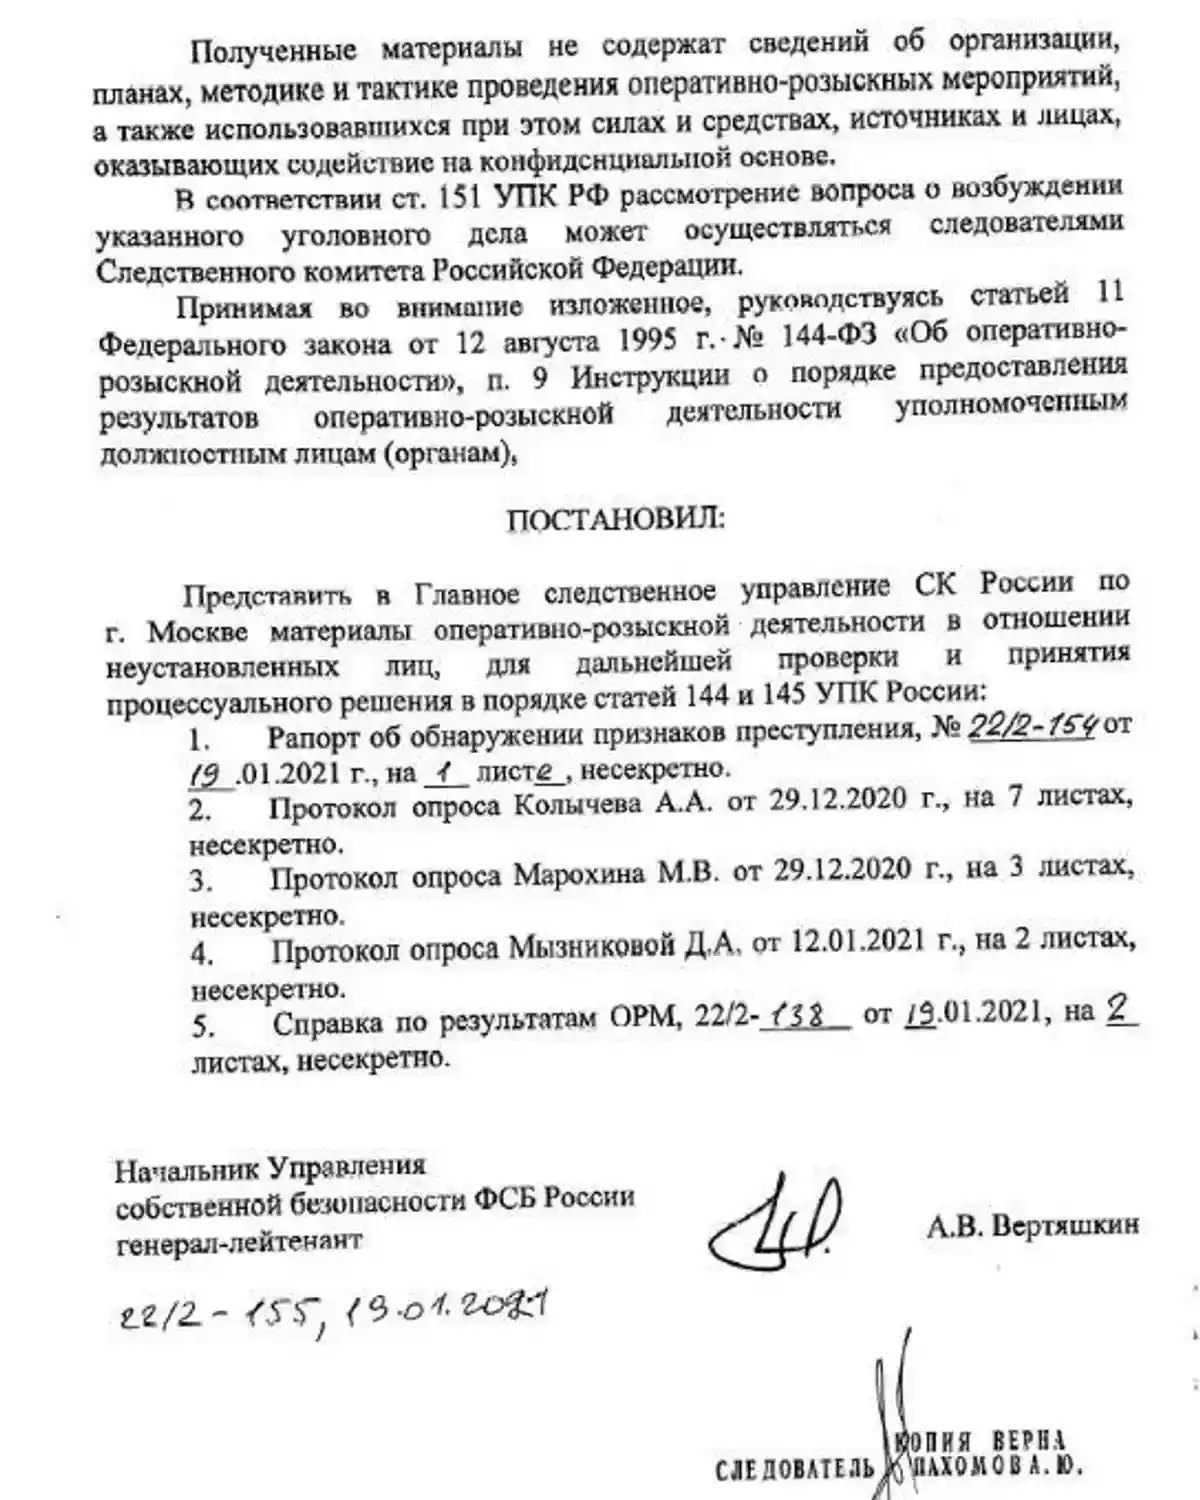 Выдержка из результатов оперативно-розыскной деятельности УСБ ФСБ Фото: theins.ru